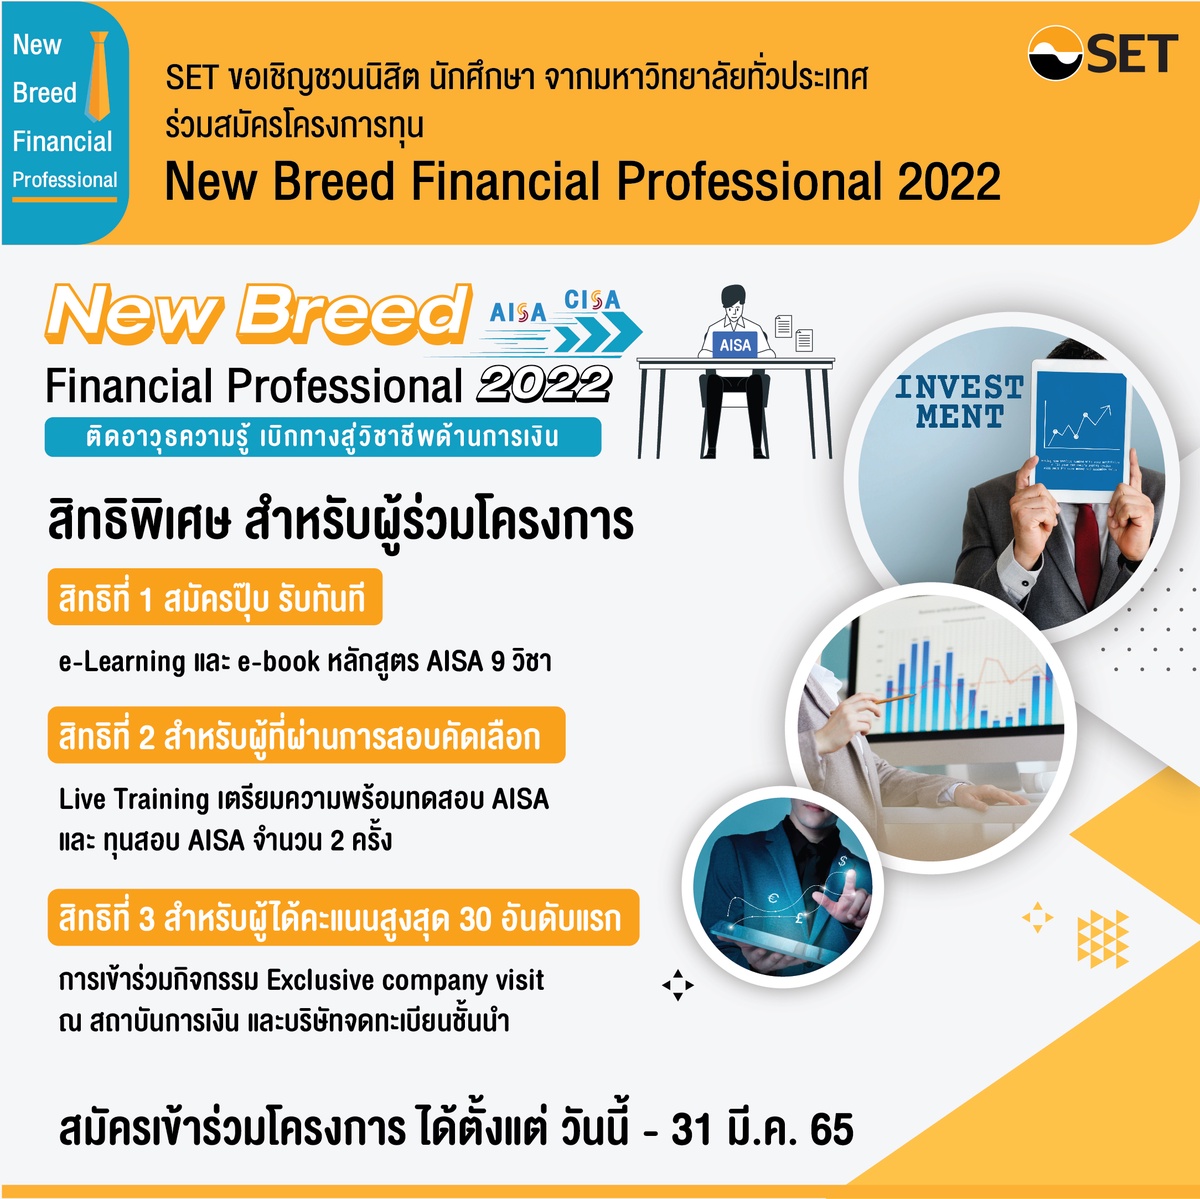 ตลาดหลักทรัพย์ฯ ชวนนิสิตนักศึกษาร่วมโครงการ New Breed Financial Professional 2022